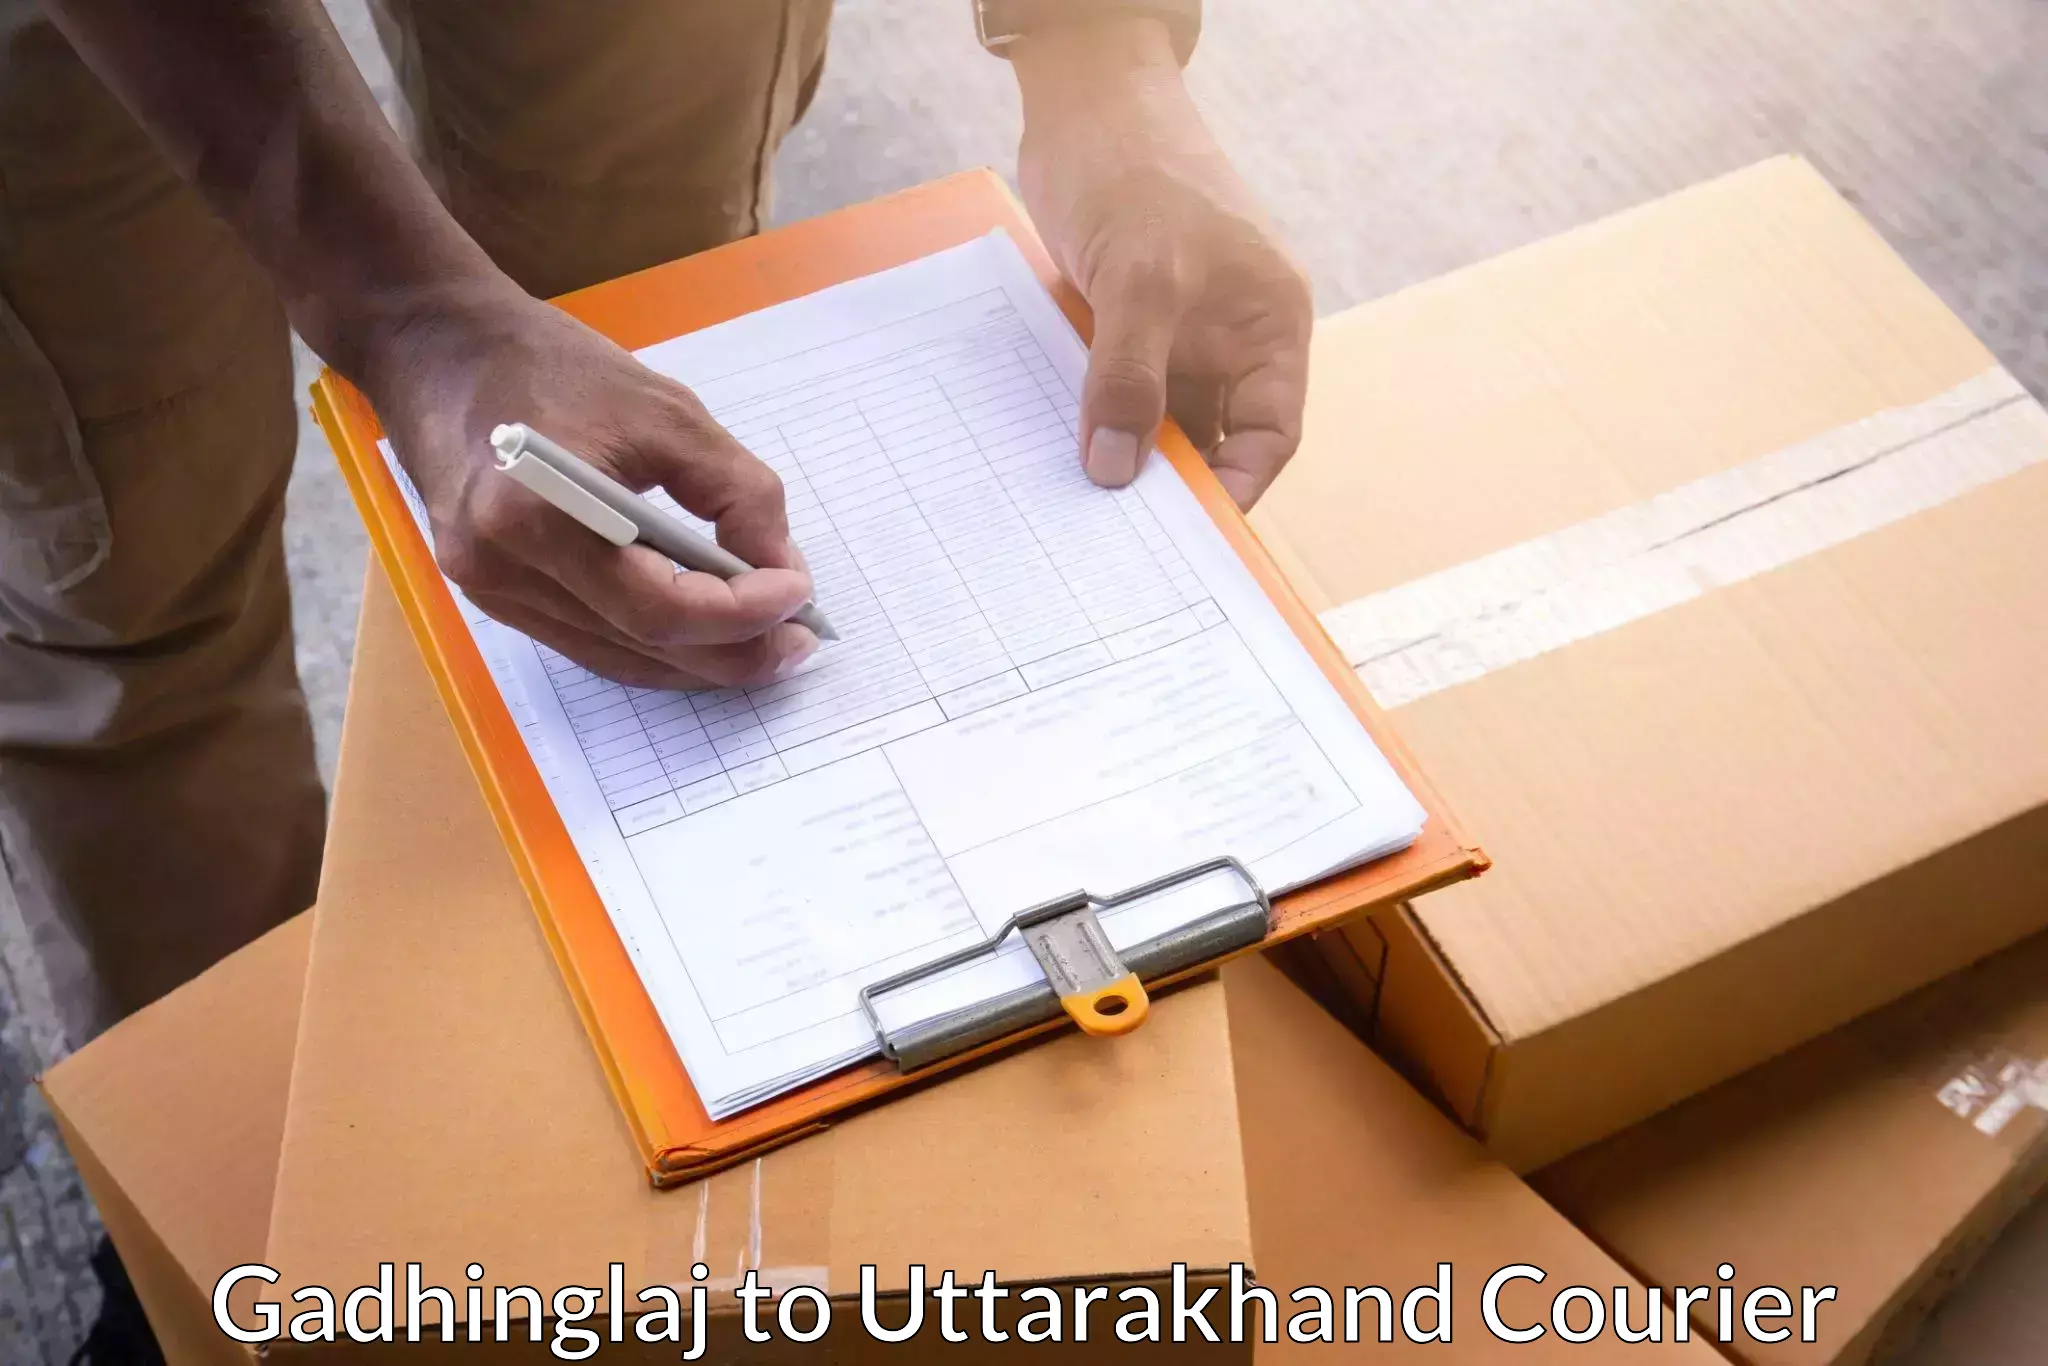 Bulk shipment Gadhinglaj to Uttarakhand